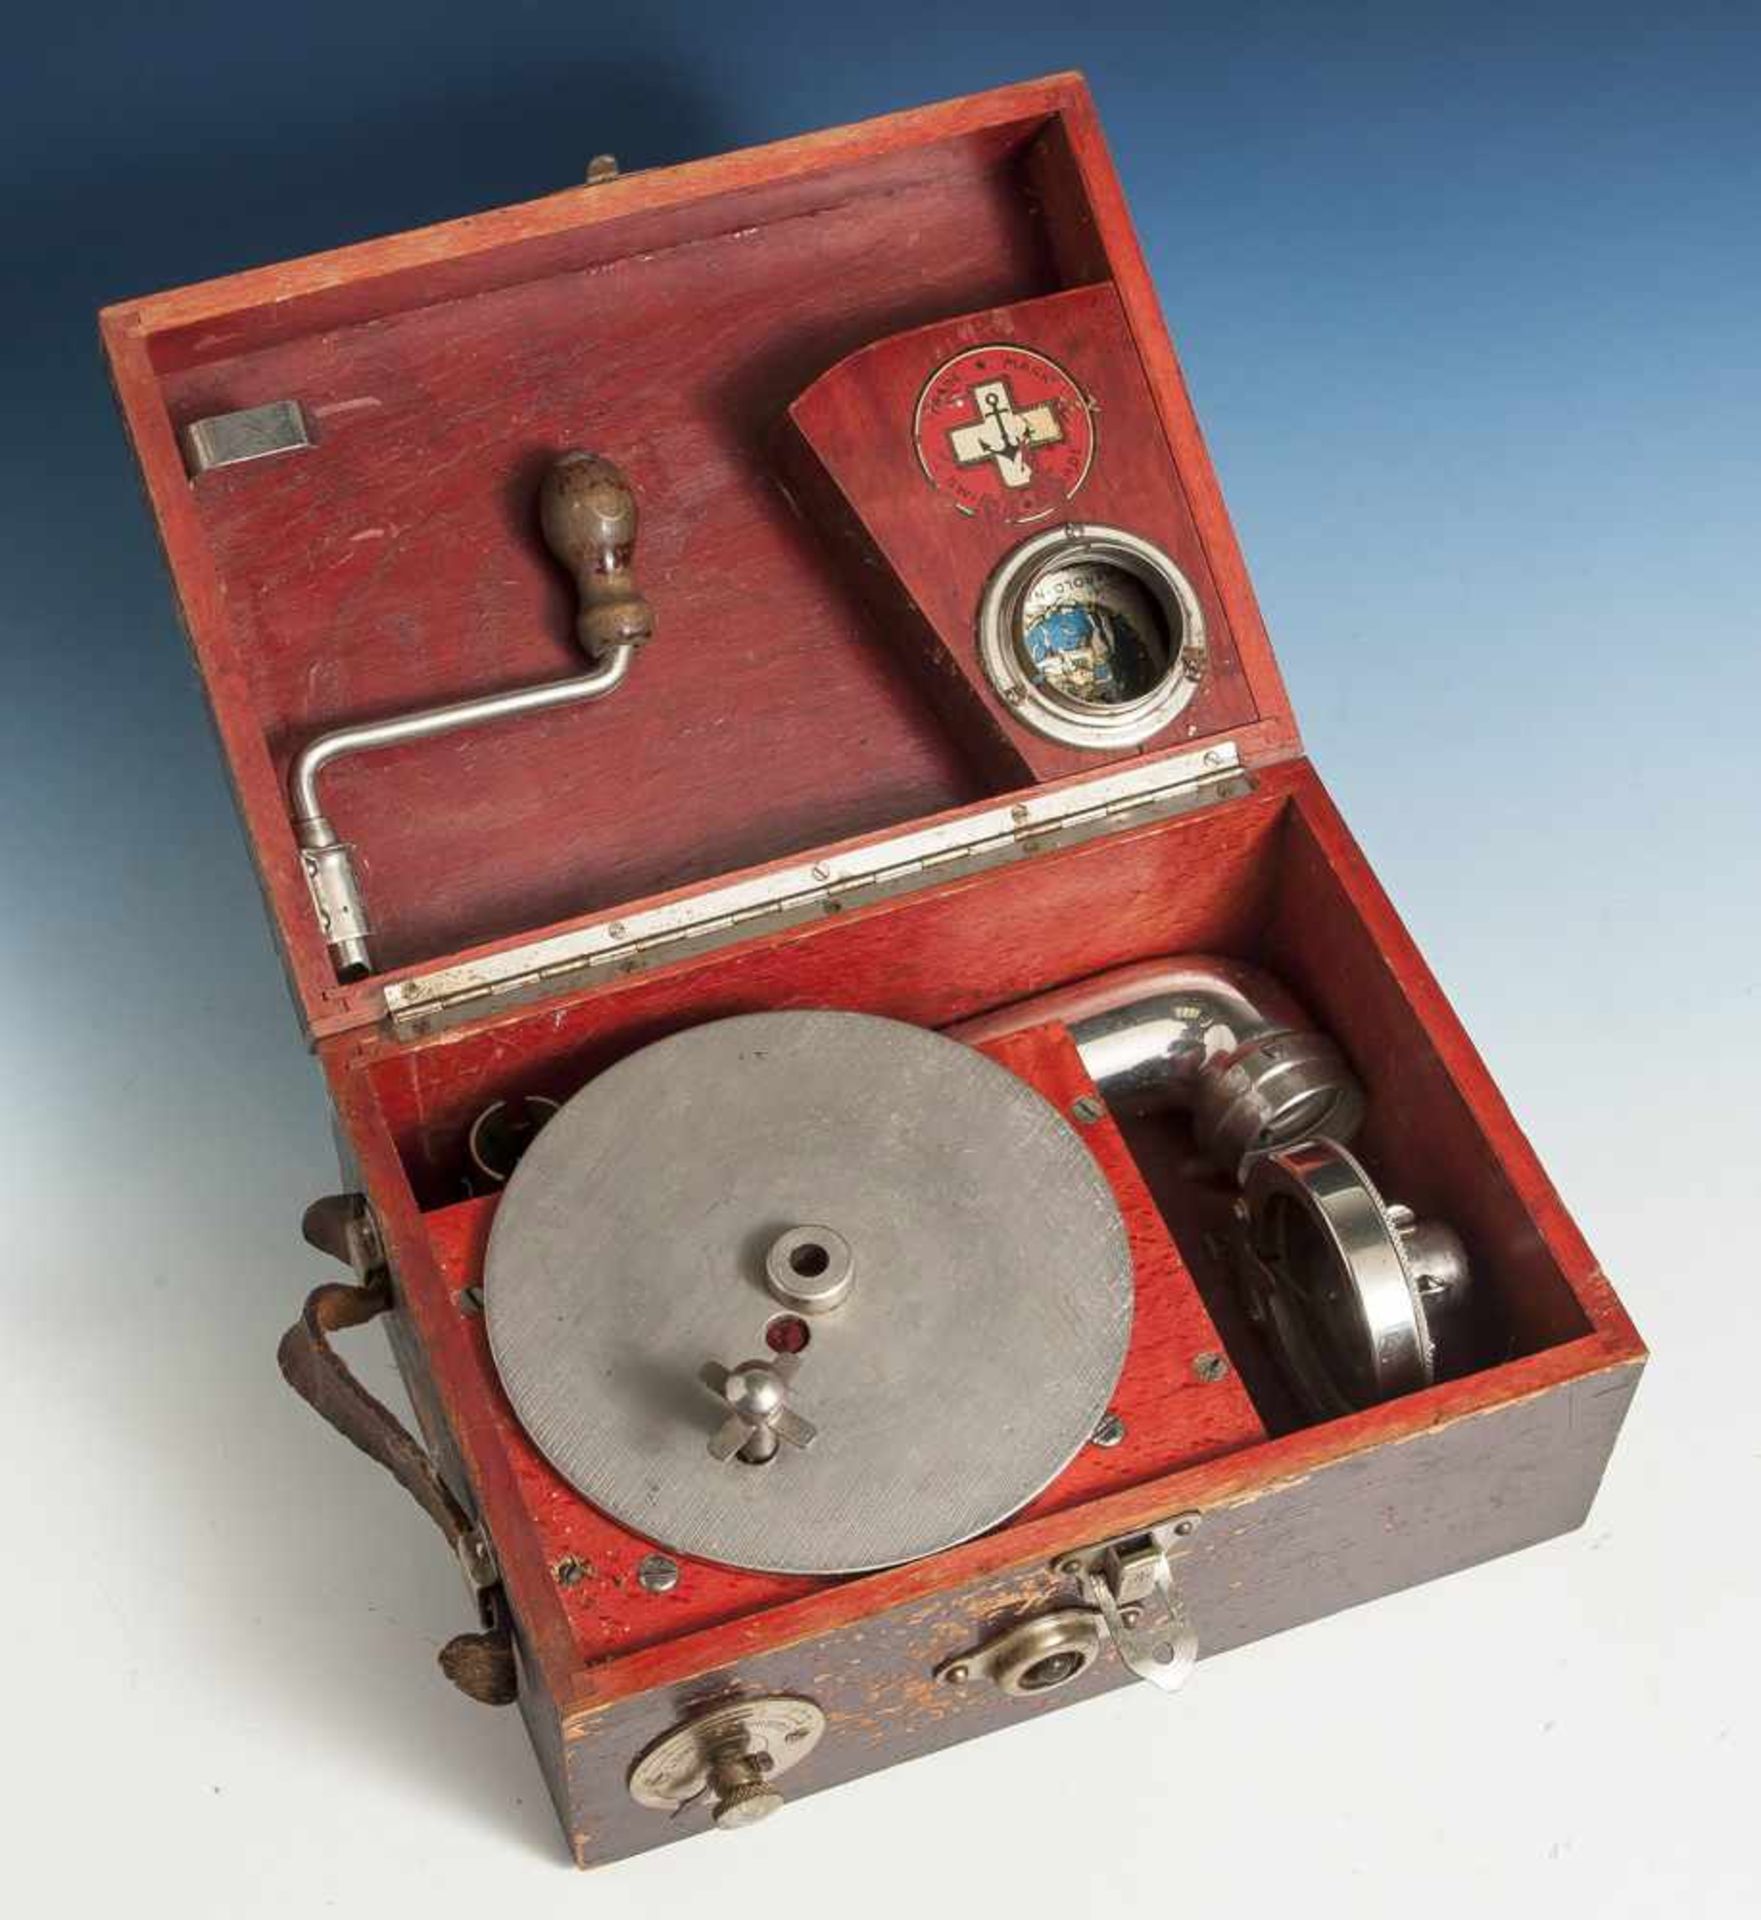 Reisegrammophon in Koffer, Schweiz, hergestellt ab ca. 1925, mit Schalldose Sonata, bez."Sonata -